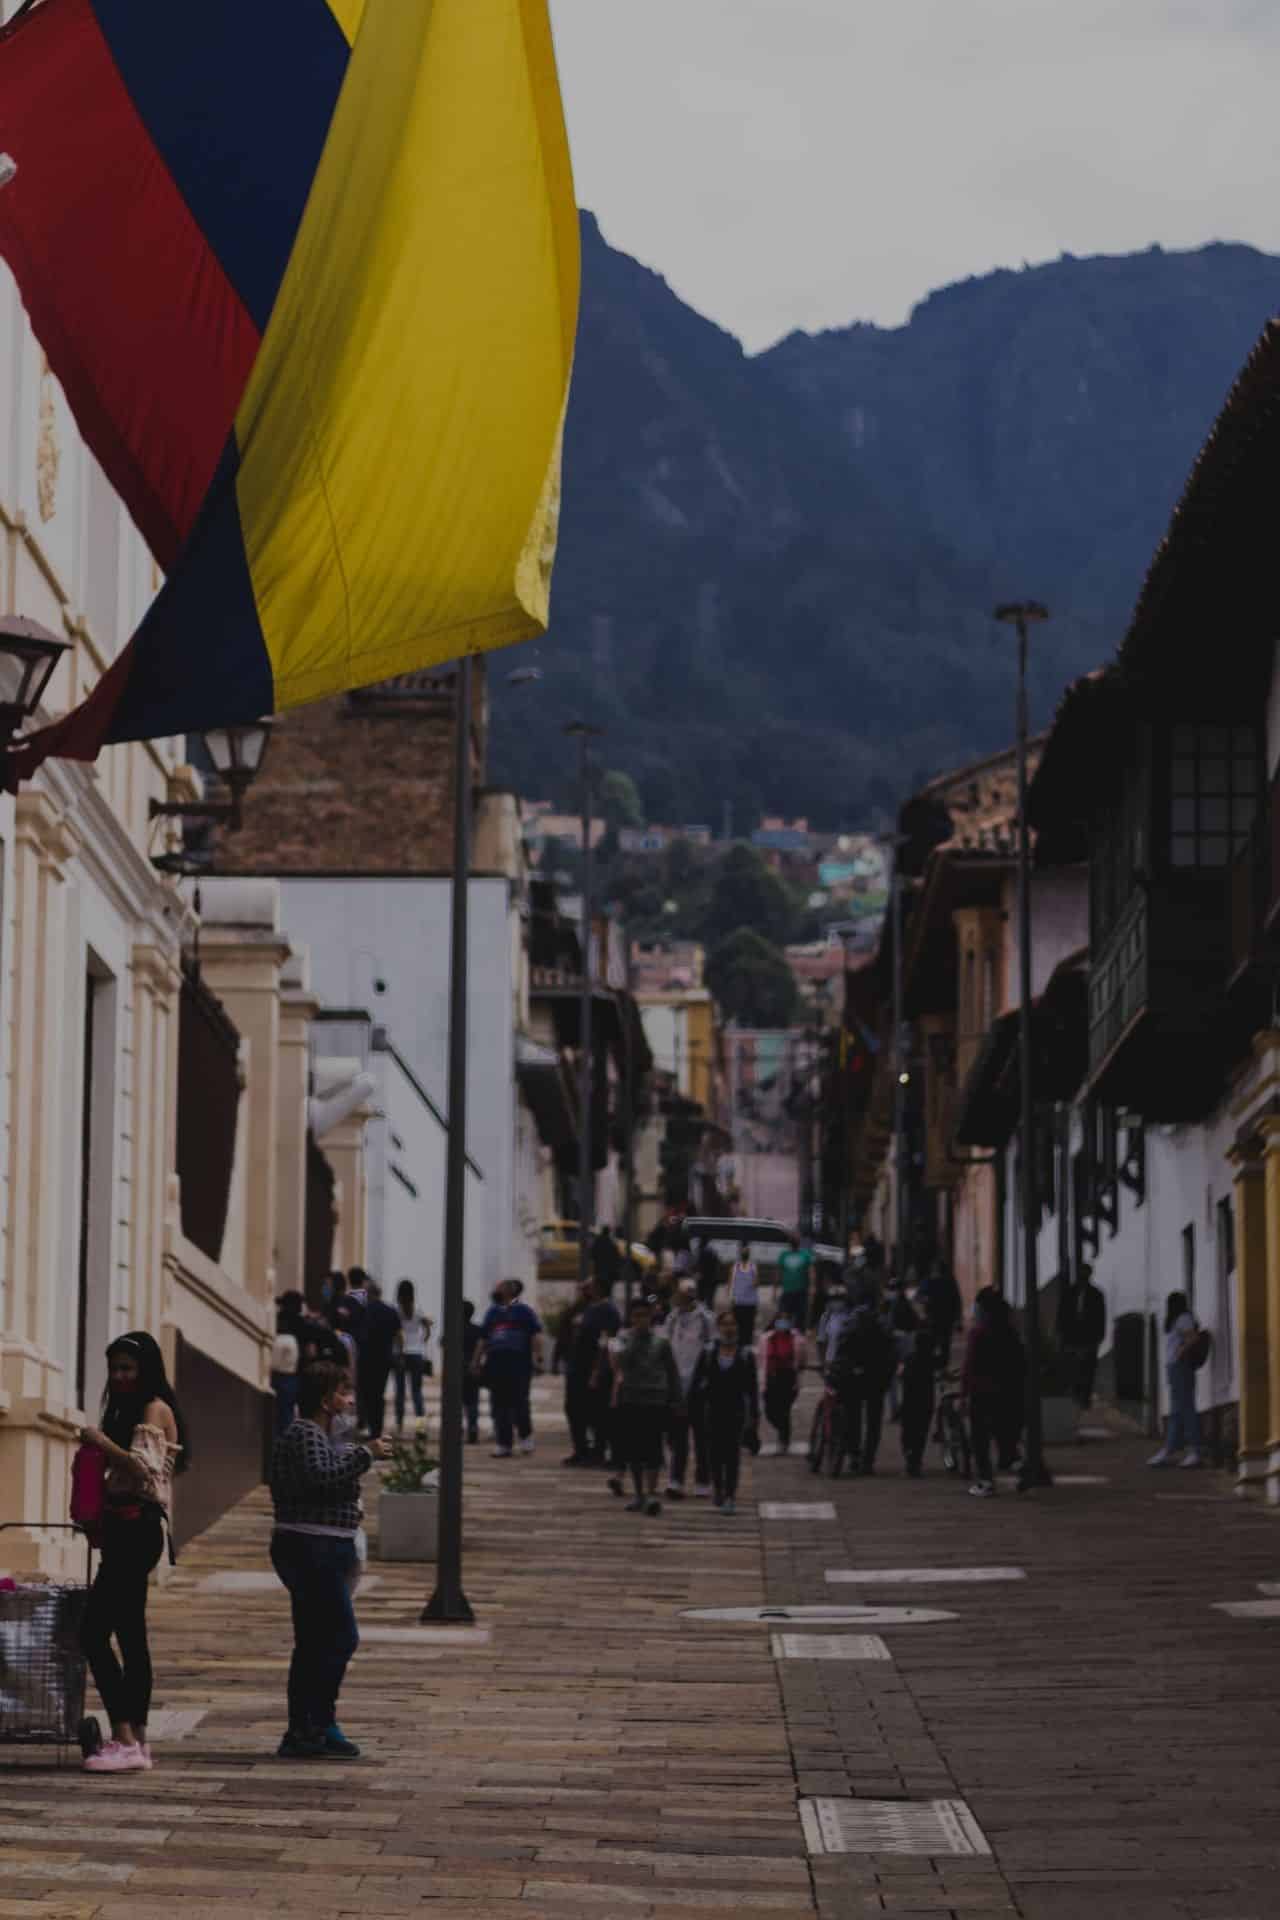 El panorama colombiano tras elecciones